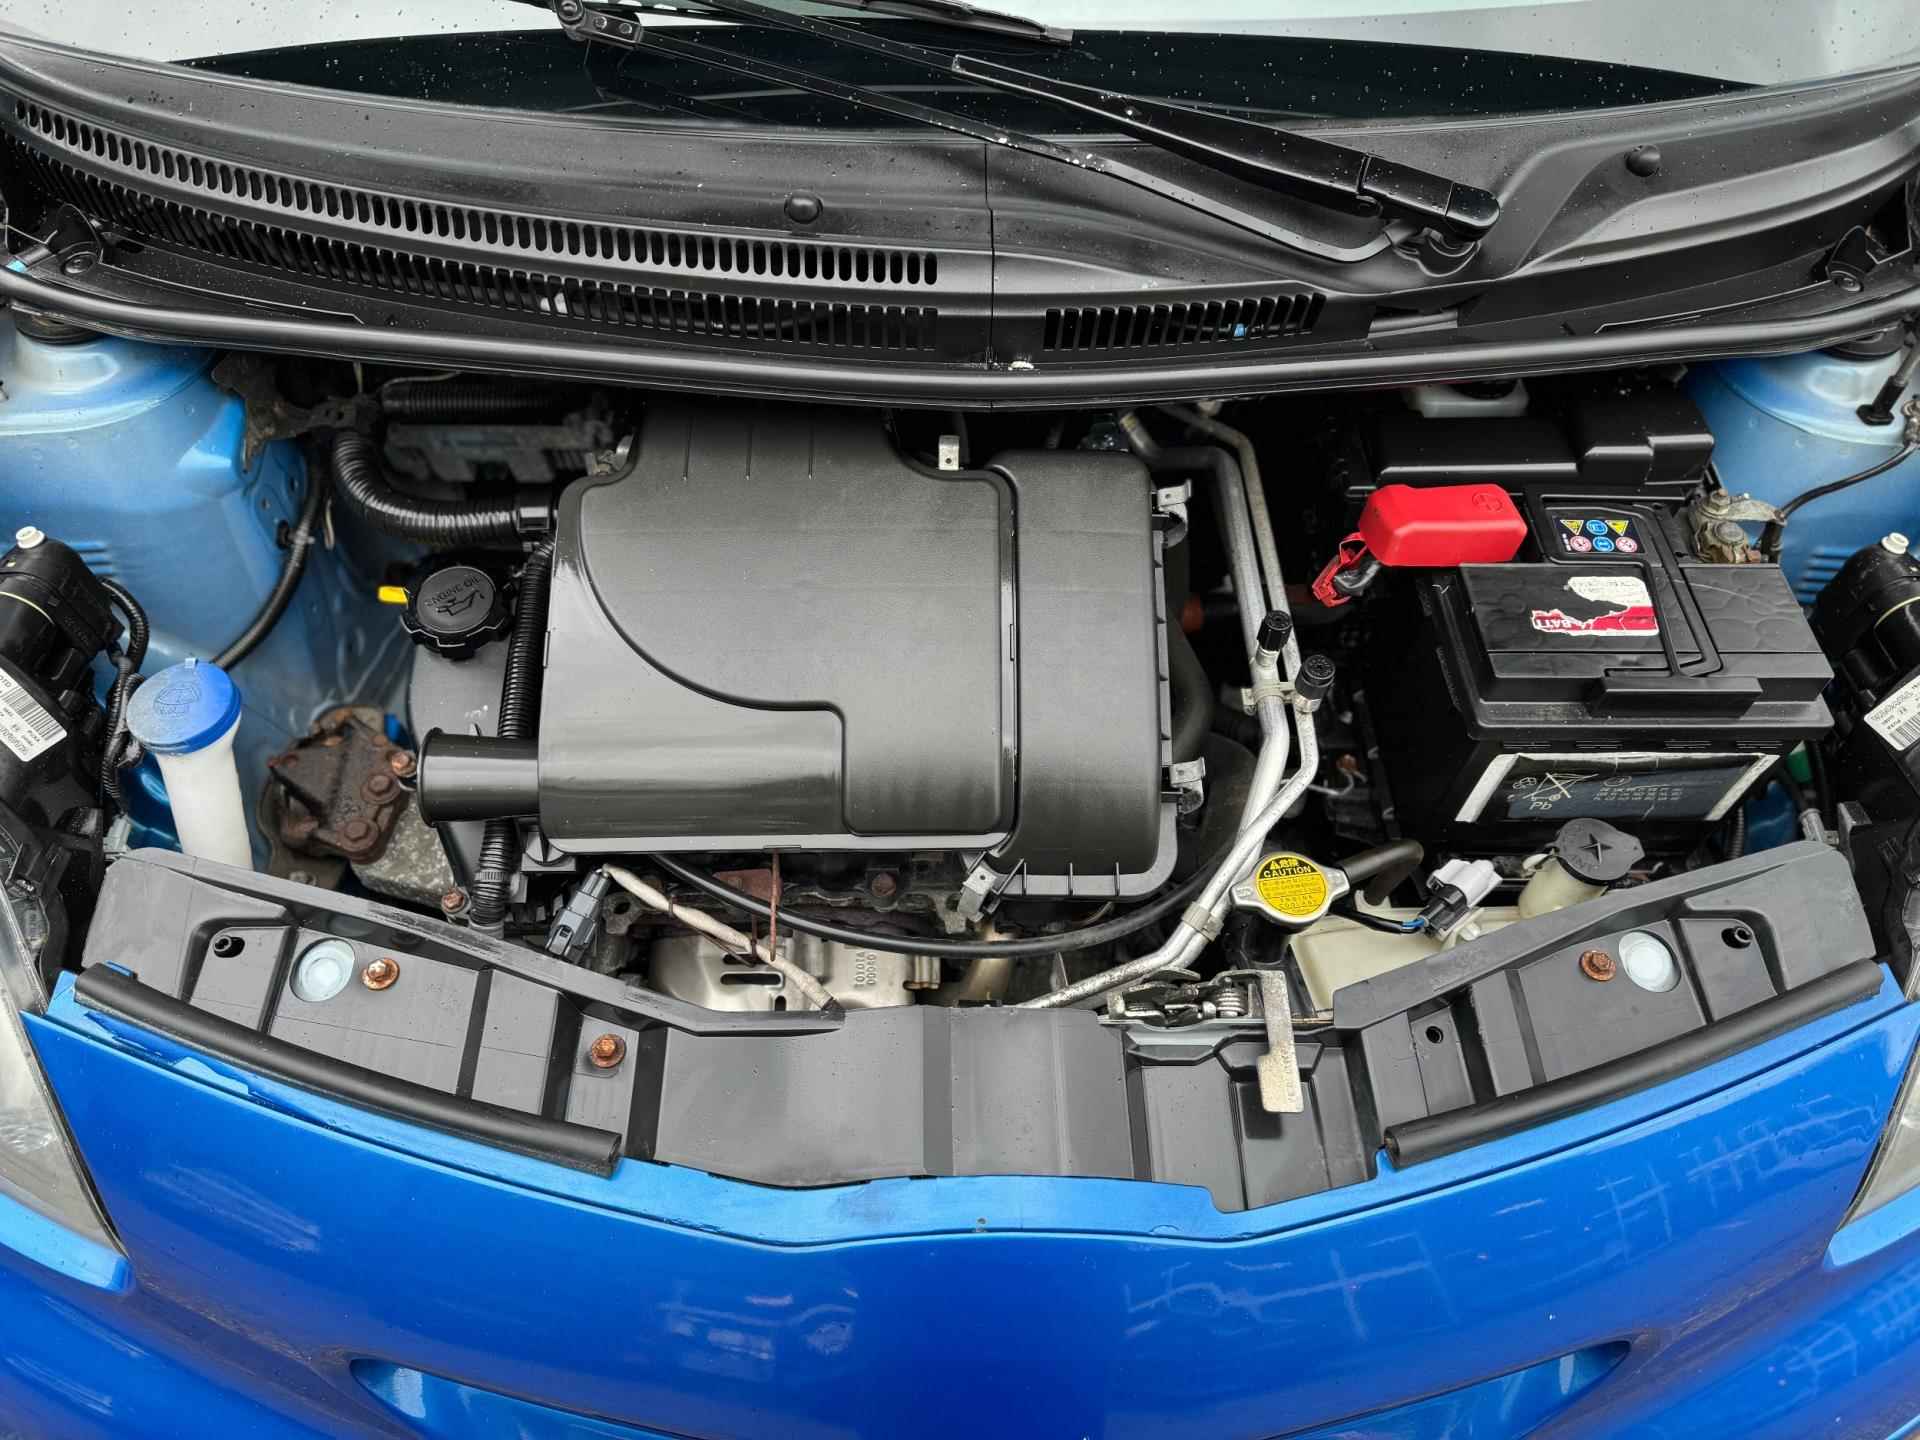 Toyota Aygo 1.0-12V|Airco|Lage KM|5drs|Topstaat|Toerenteller|Special Blue|LM velgen|Boekjes|Zeer nette auto± - 14/34